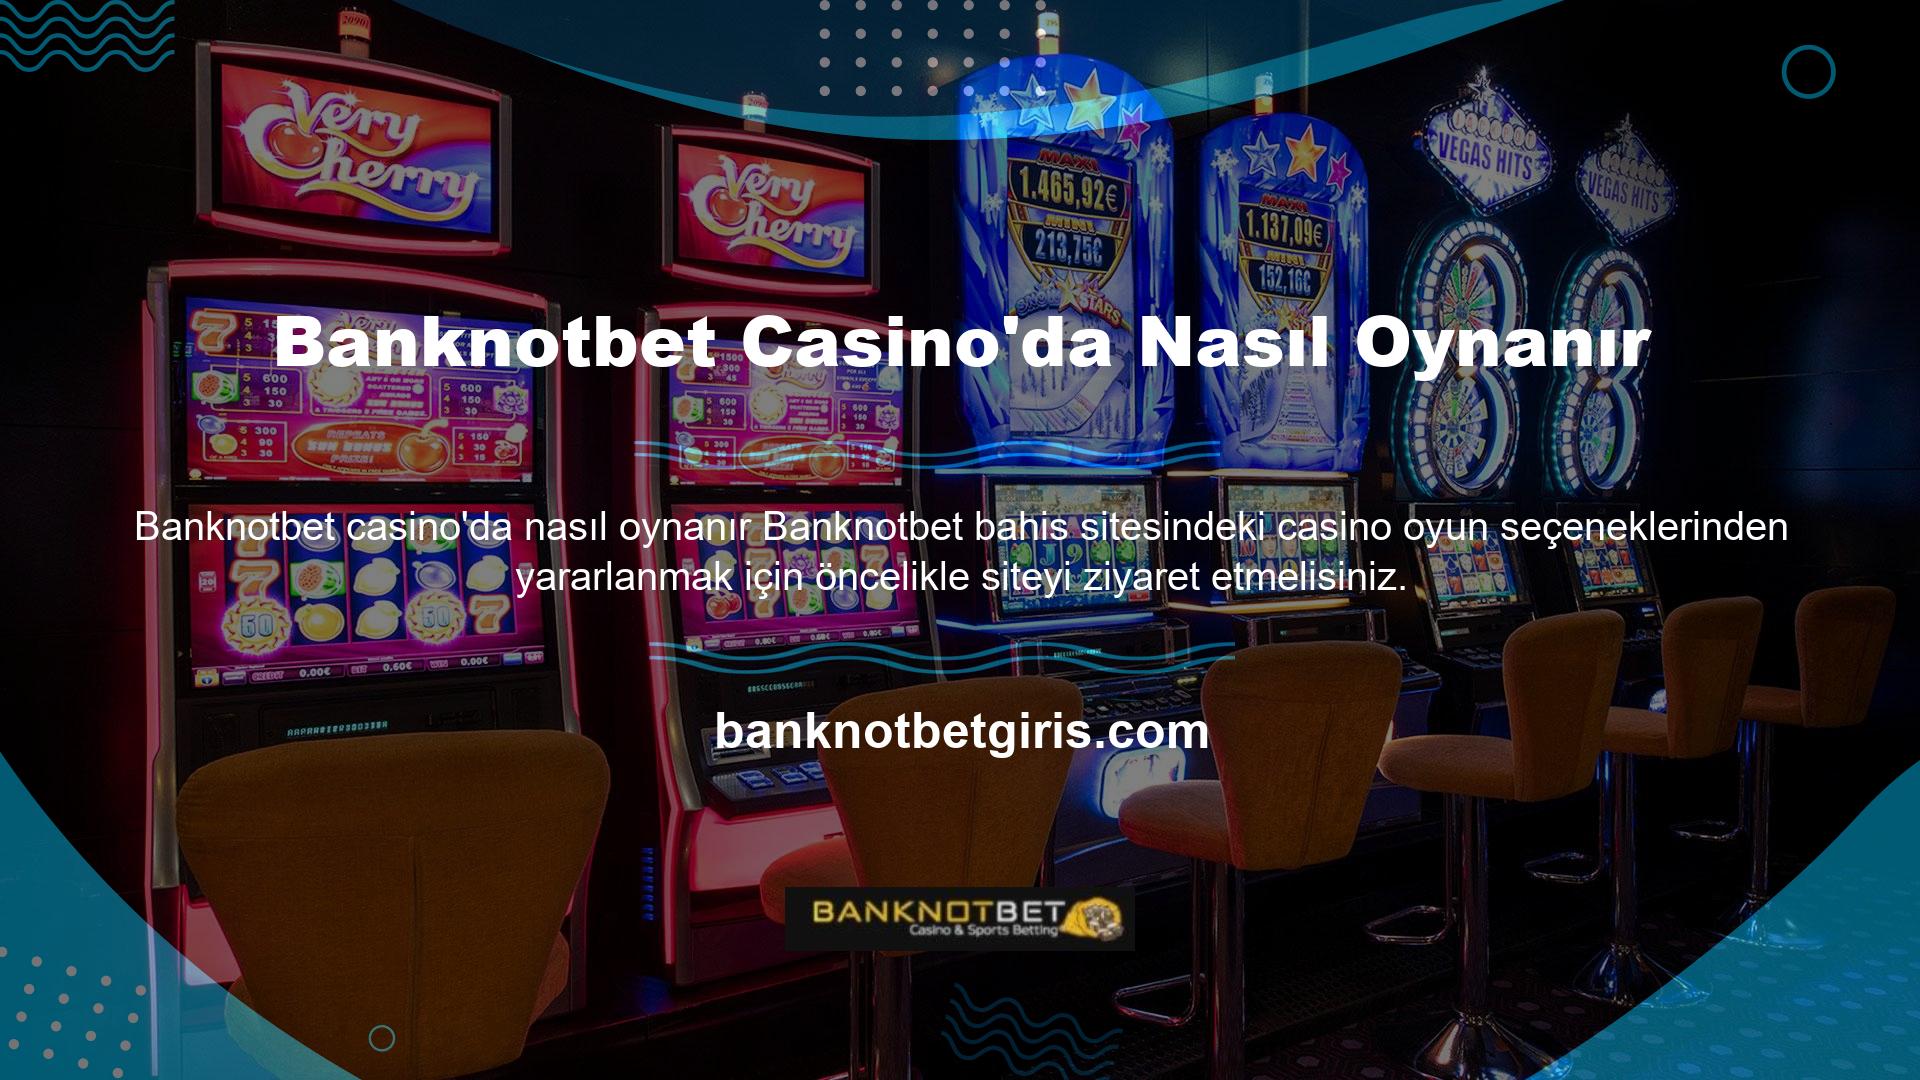 Web sitesini ziyaret ettiğinizde çeşitli casino oyun seçenekleriyle kazancınızı artırma fırsatına sahip olacaksınız